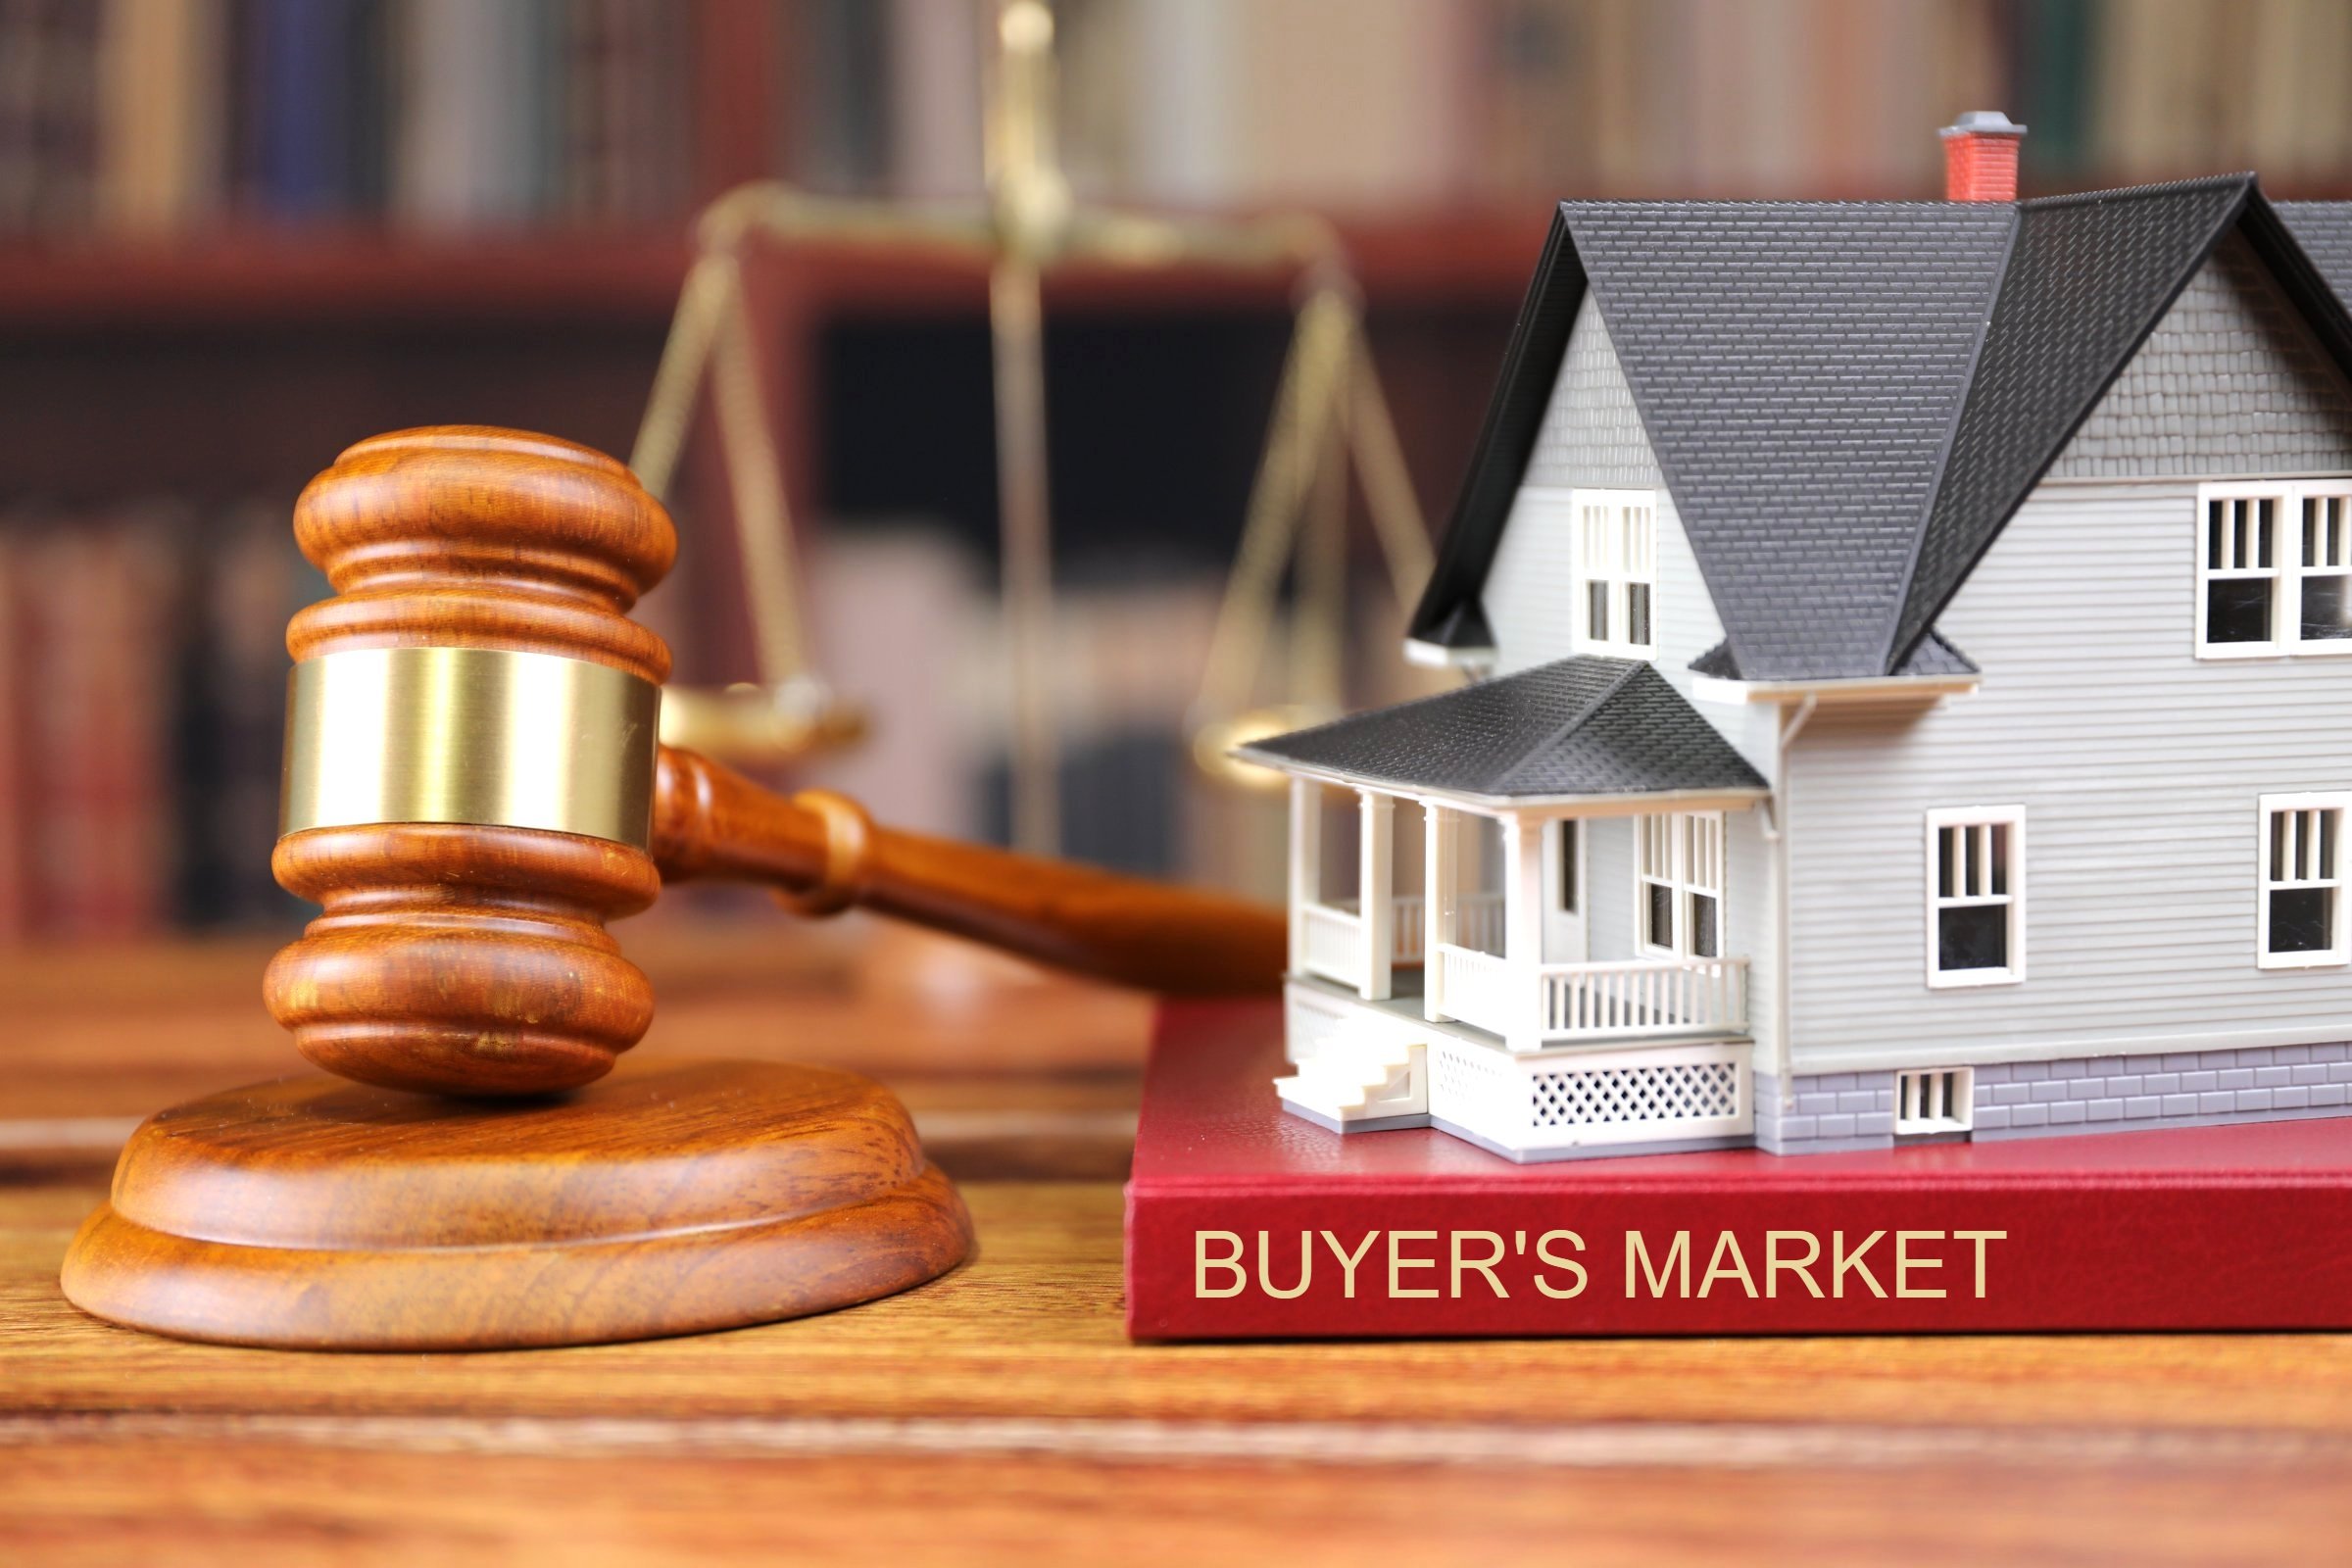 buyers market